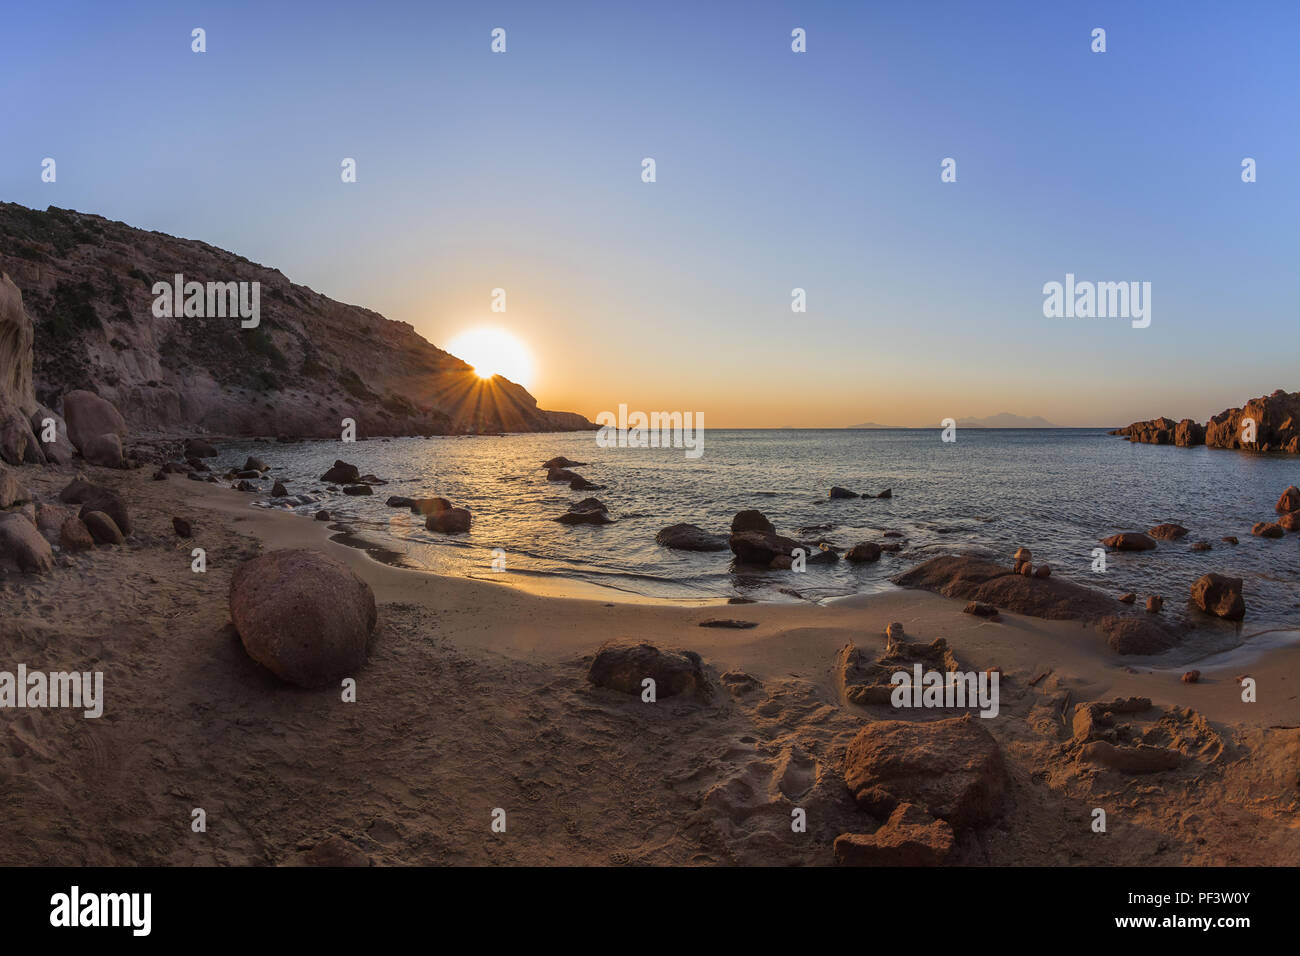 sunrise on the beach near Kefalos town. Kos island, Greece Stock Photo